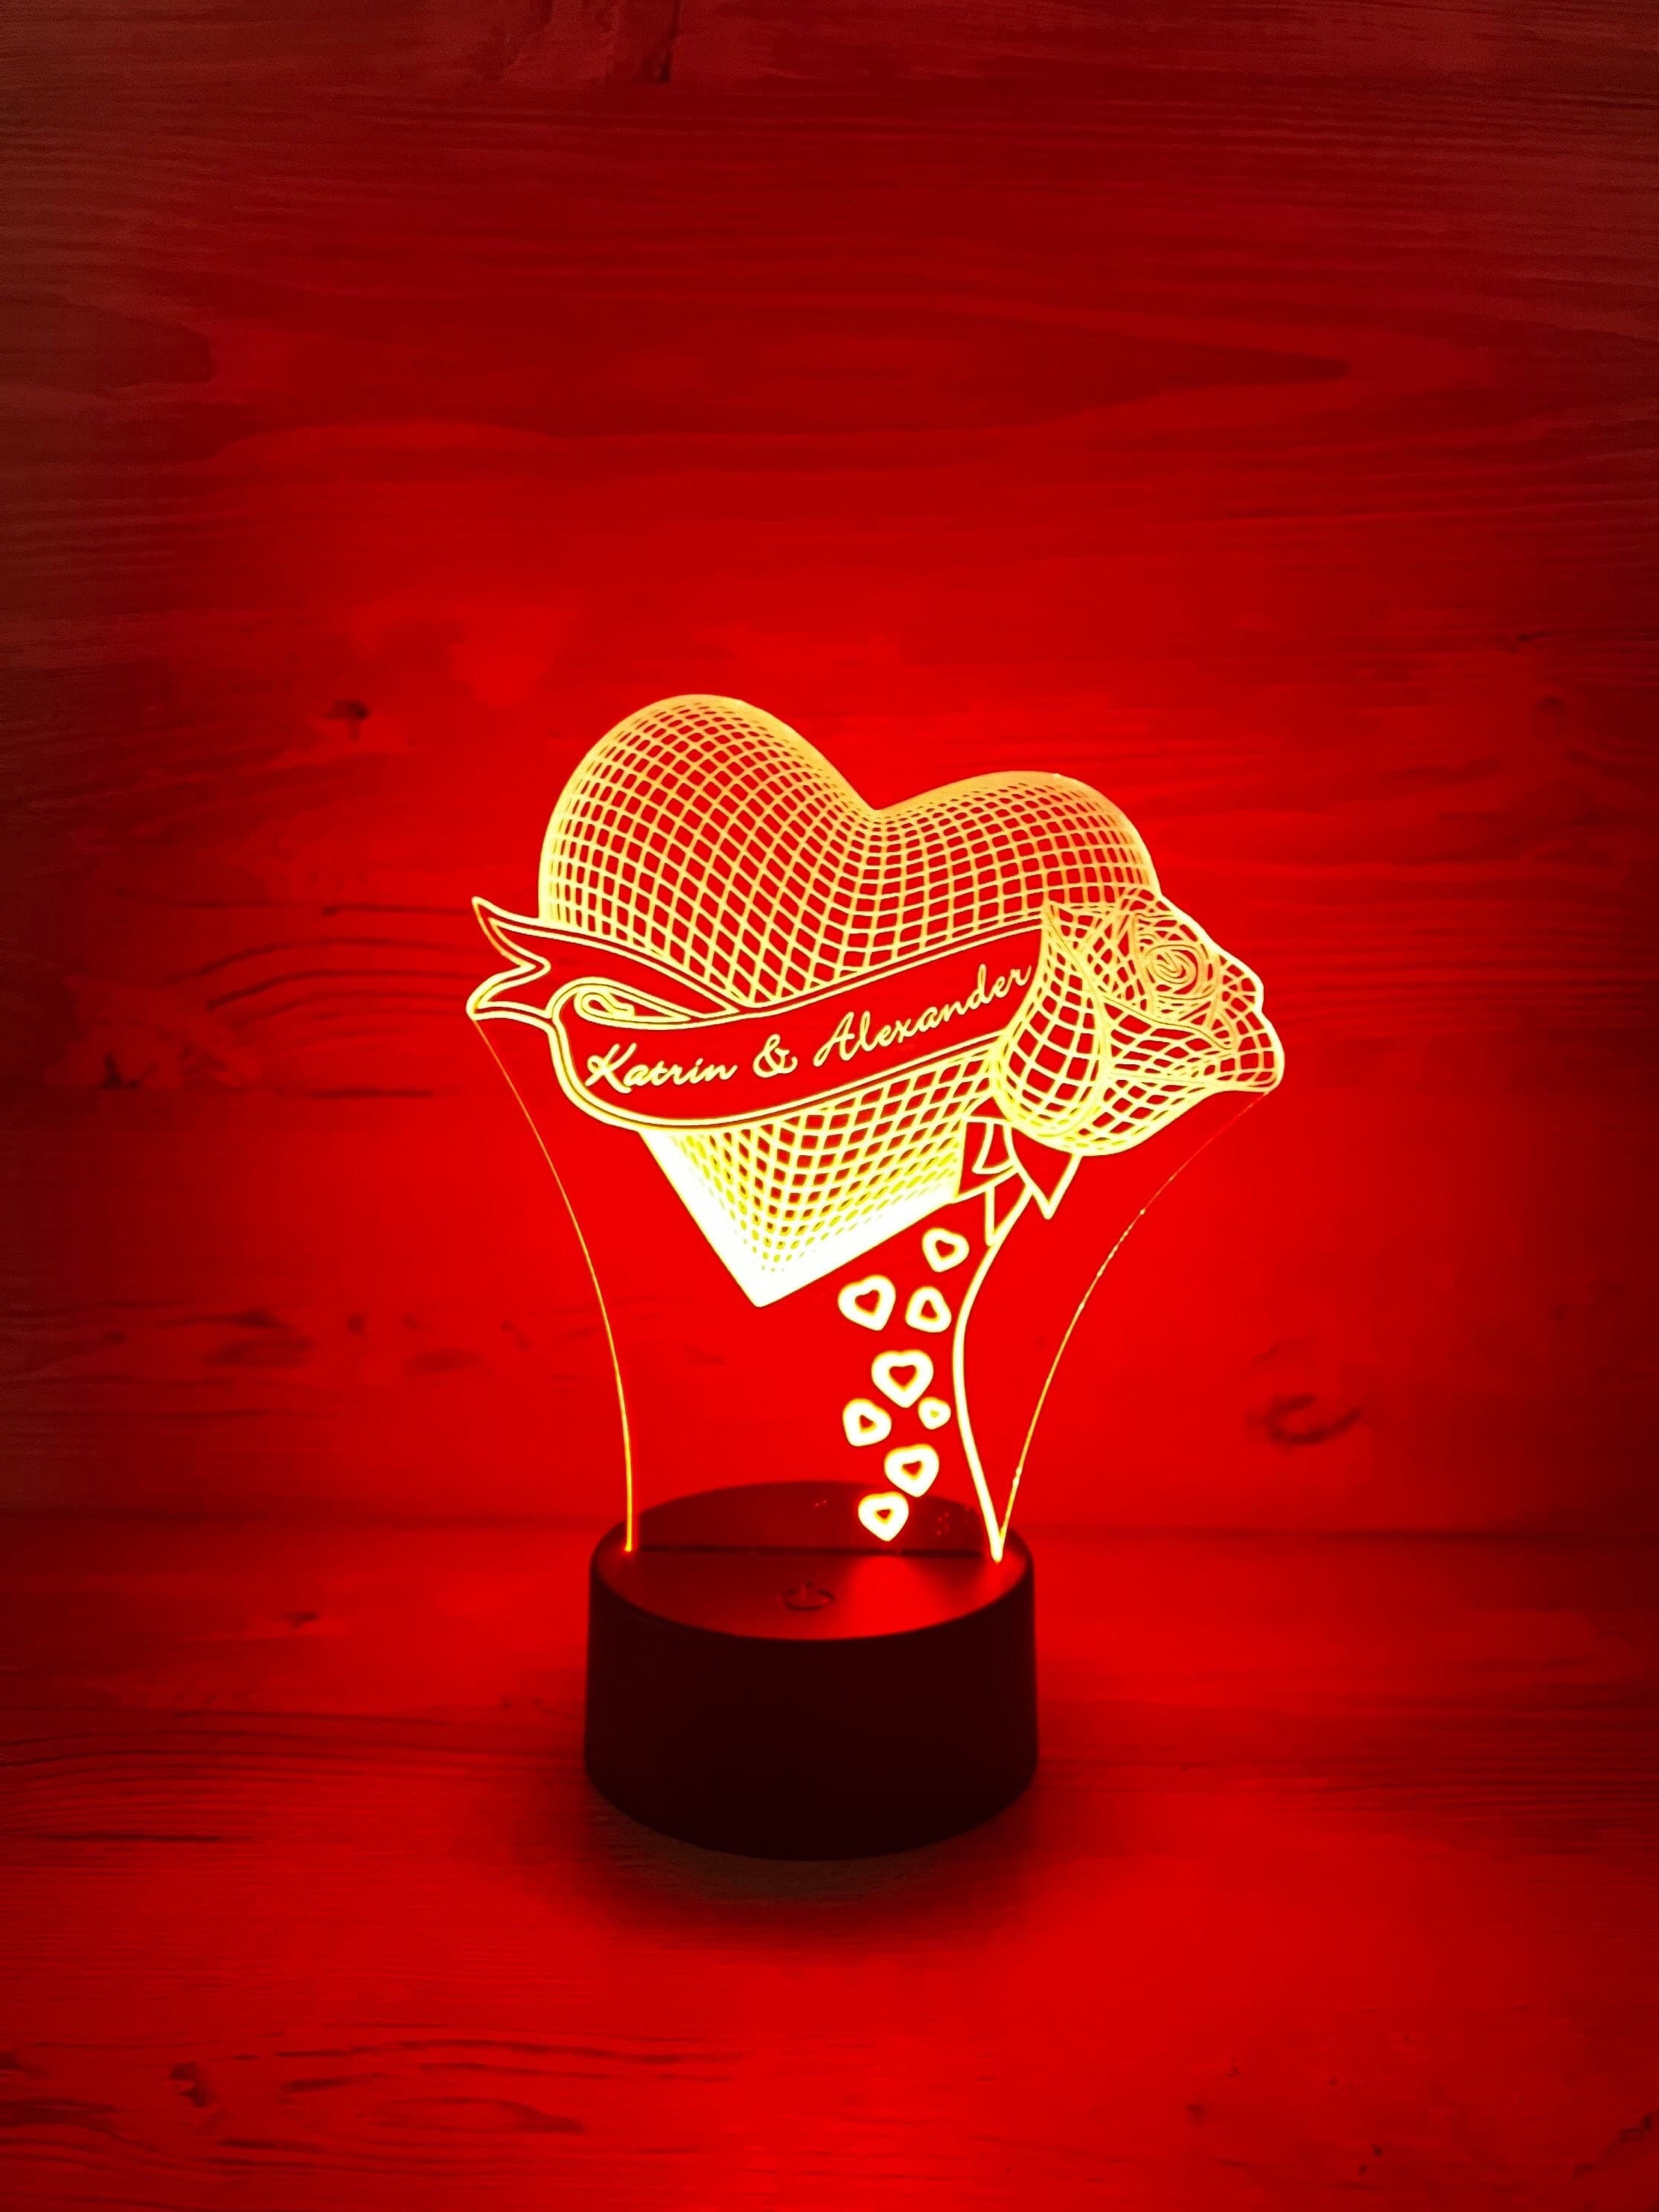 Acrylglasstehle schmal mit Holzsockel und LED Beleuchtung – Herzlich  Willkommen – Leuchtschild – Begrüßungsschild